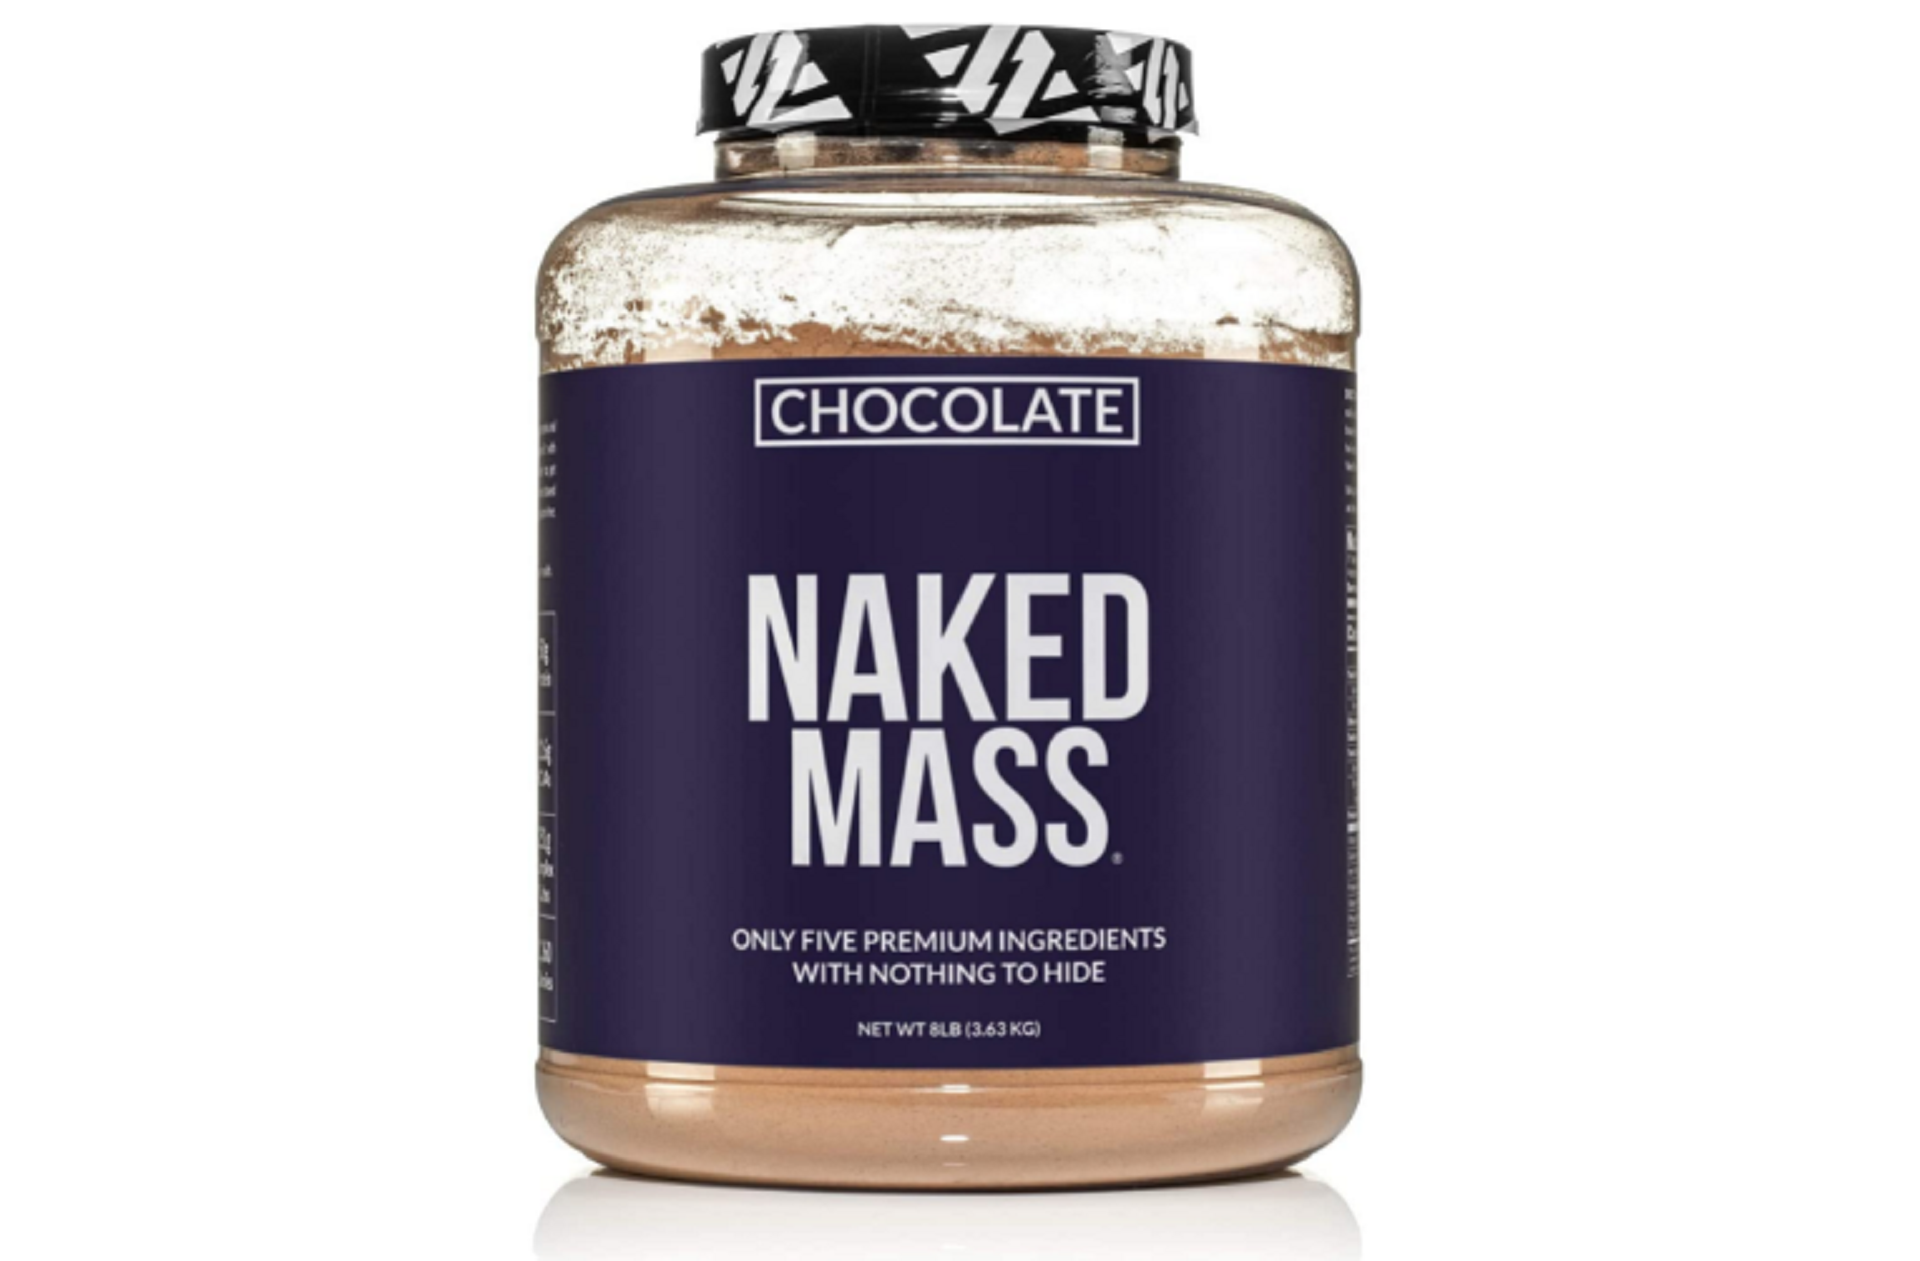 naked mass